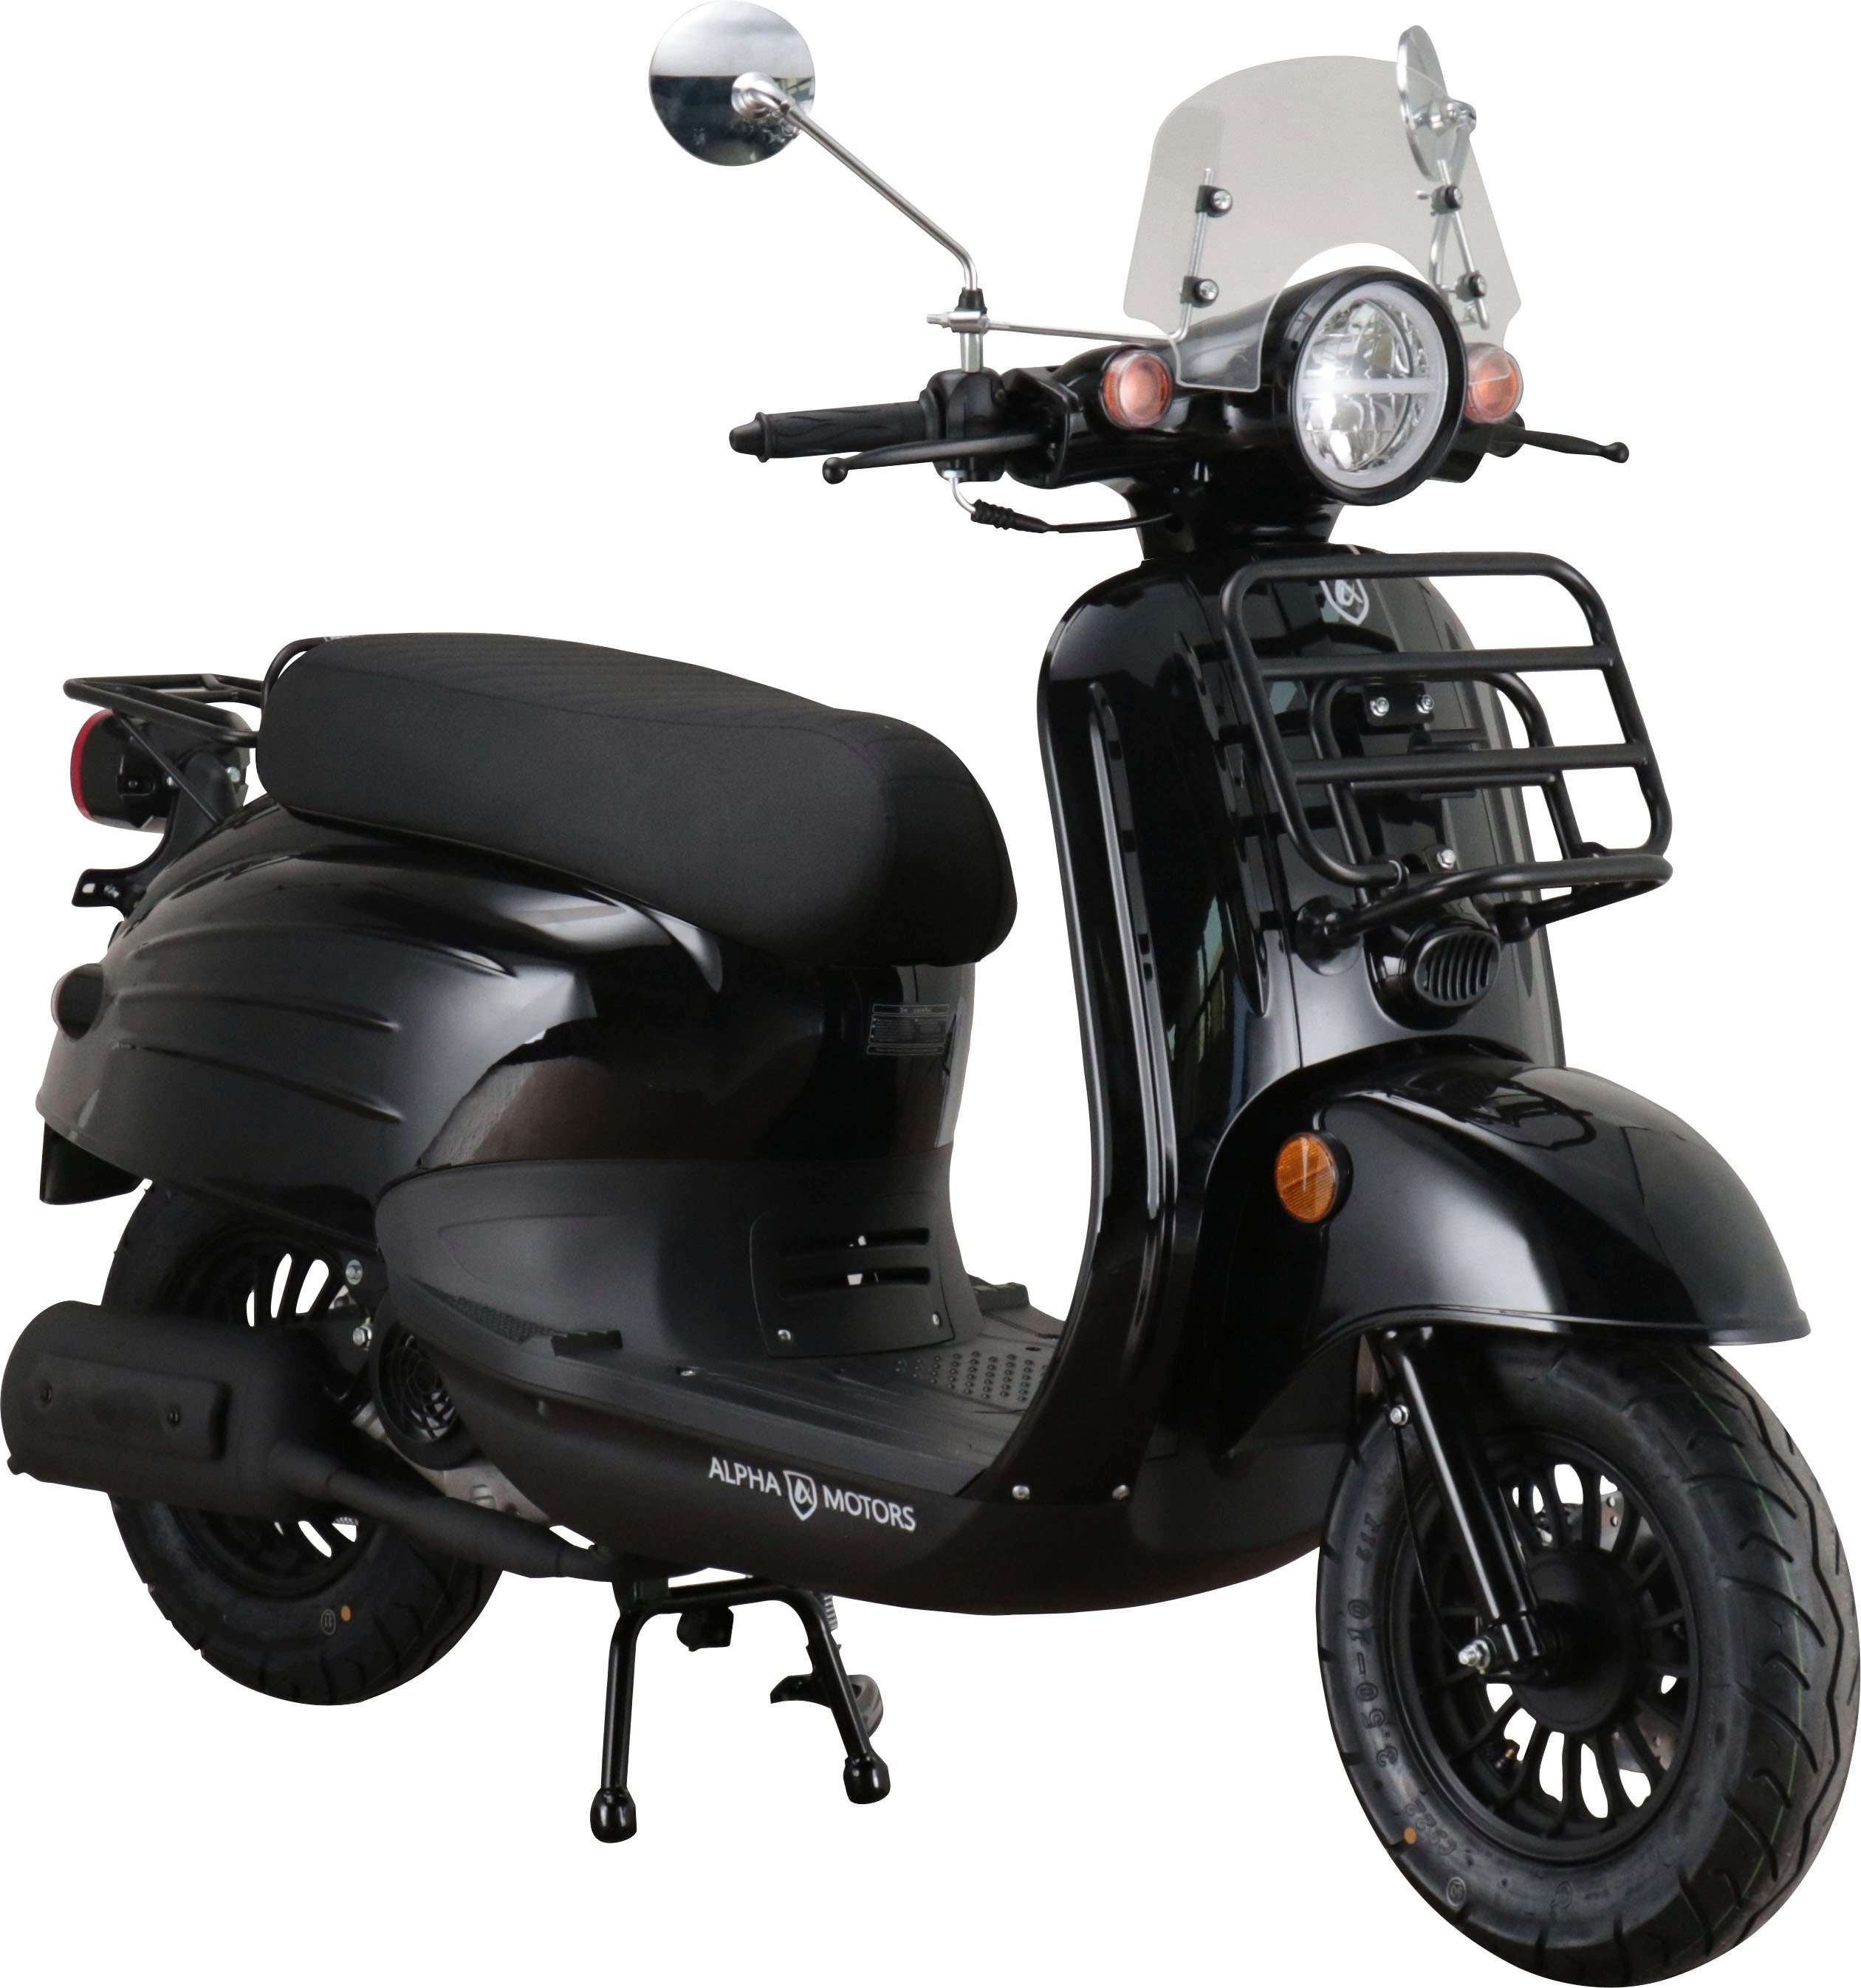 Alpha Motors Motorroller Adria, 50 ccm, 45 km/h, Euro 5, inkl. Windschild,  Gepäckträger vorne und hinten